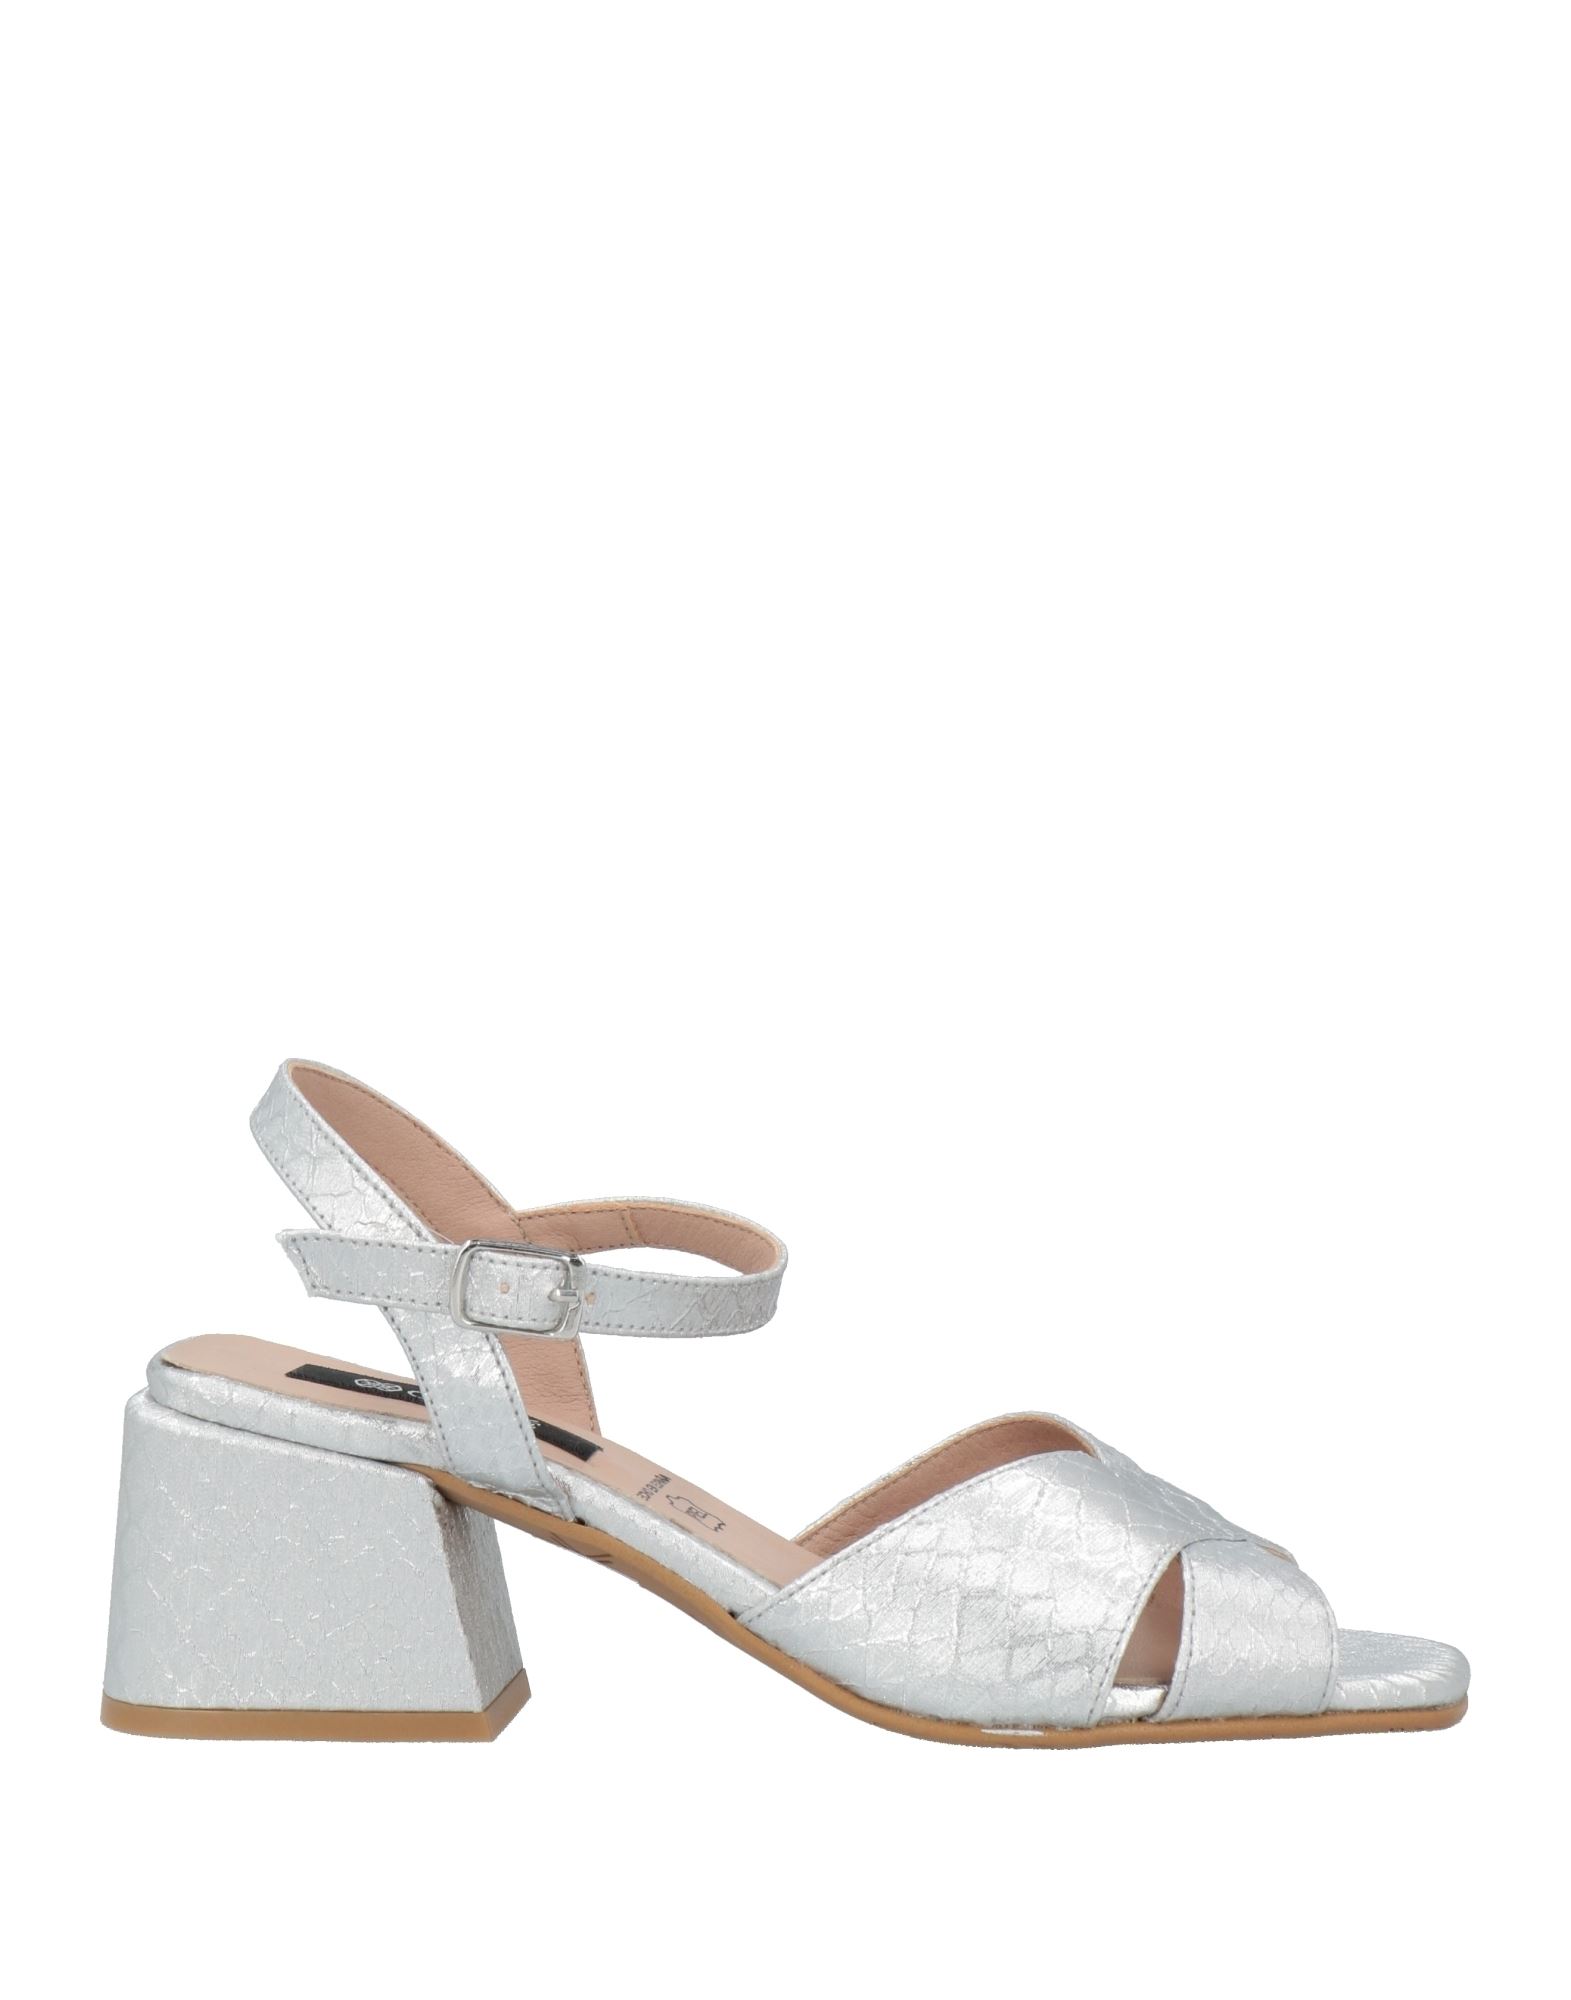 Cuplé Woman Sandals Silver Size 7 Textile Fibers